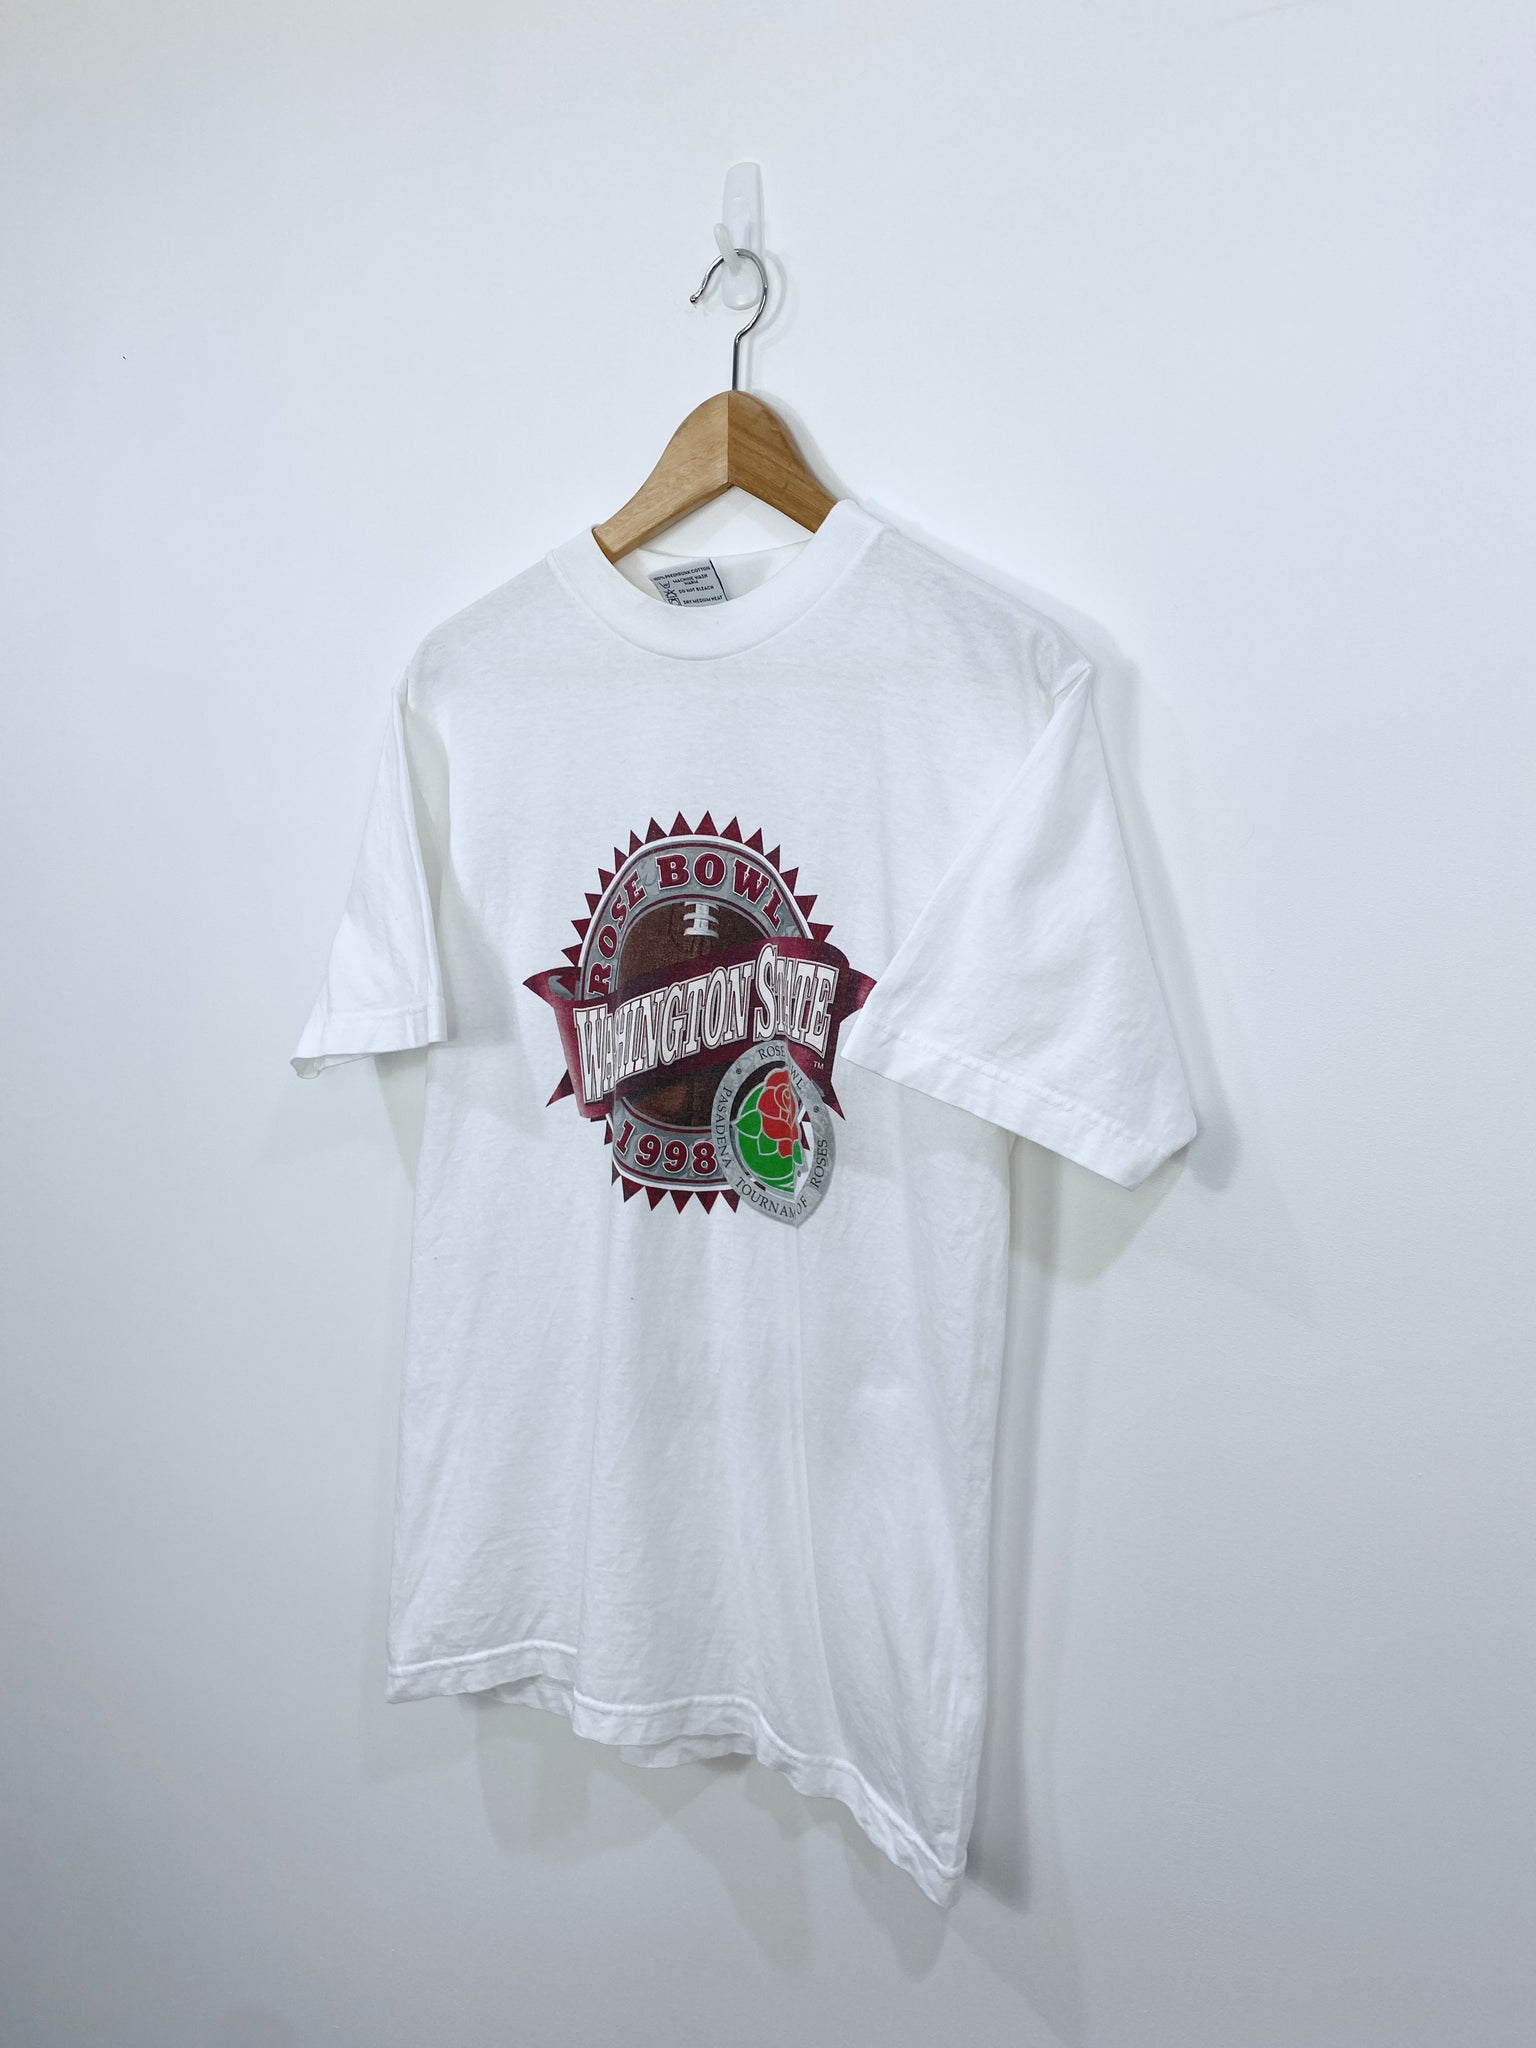 Vintage 1998 Washington State T-shirt M